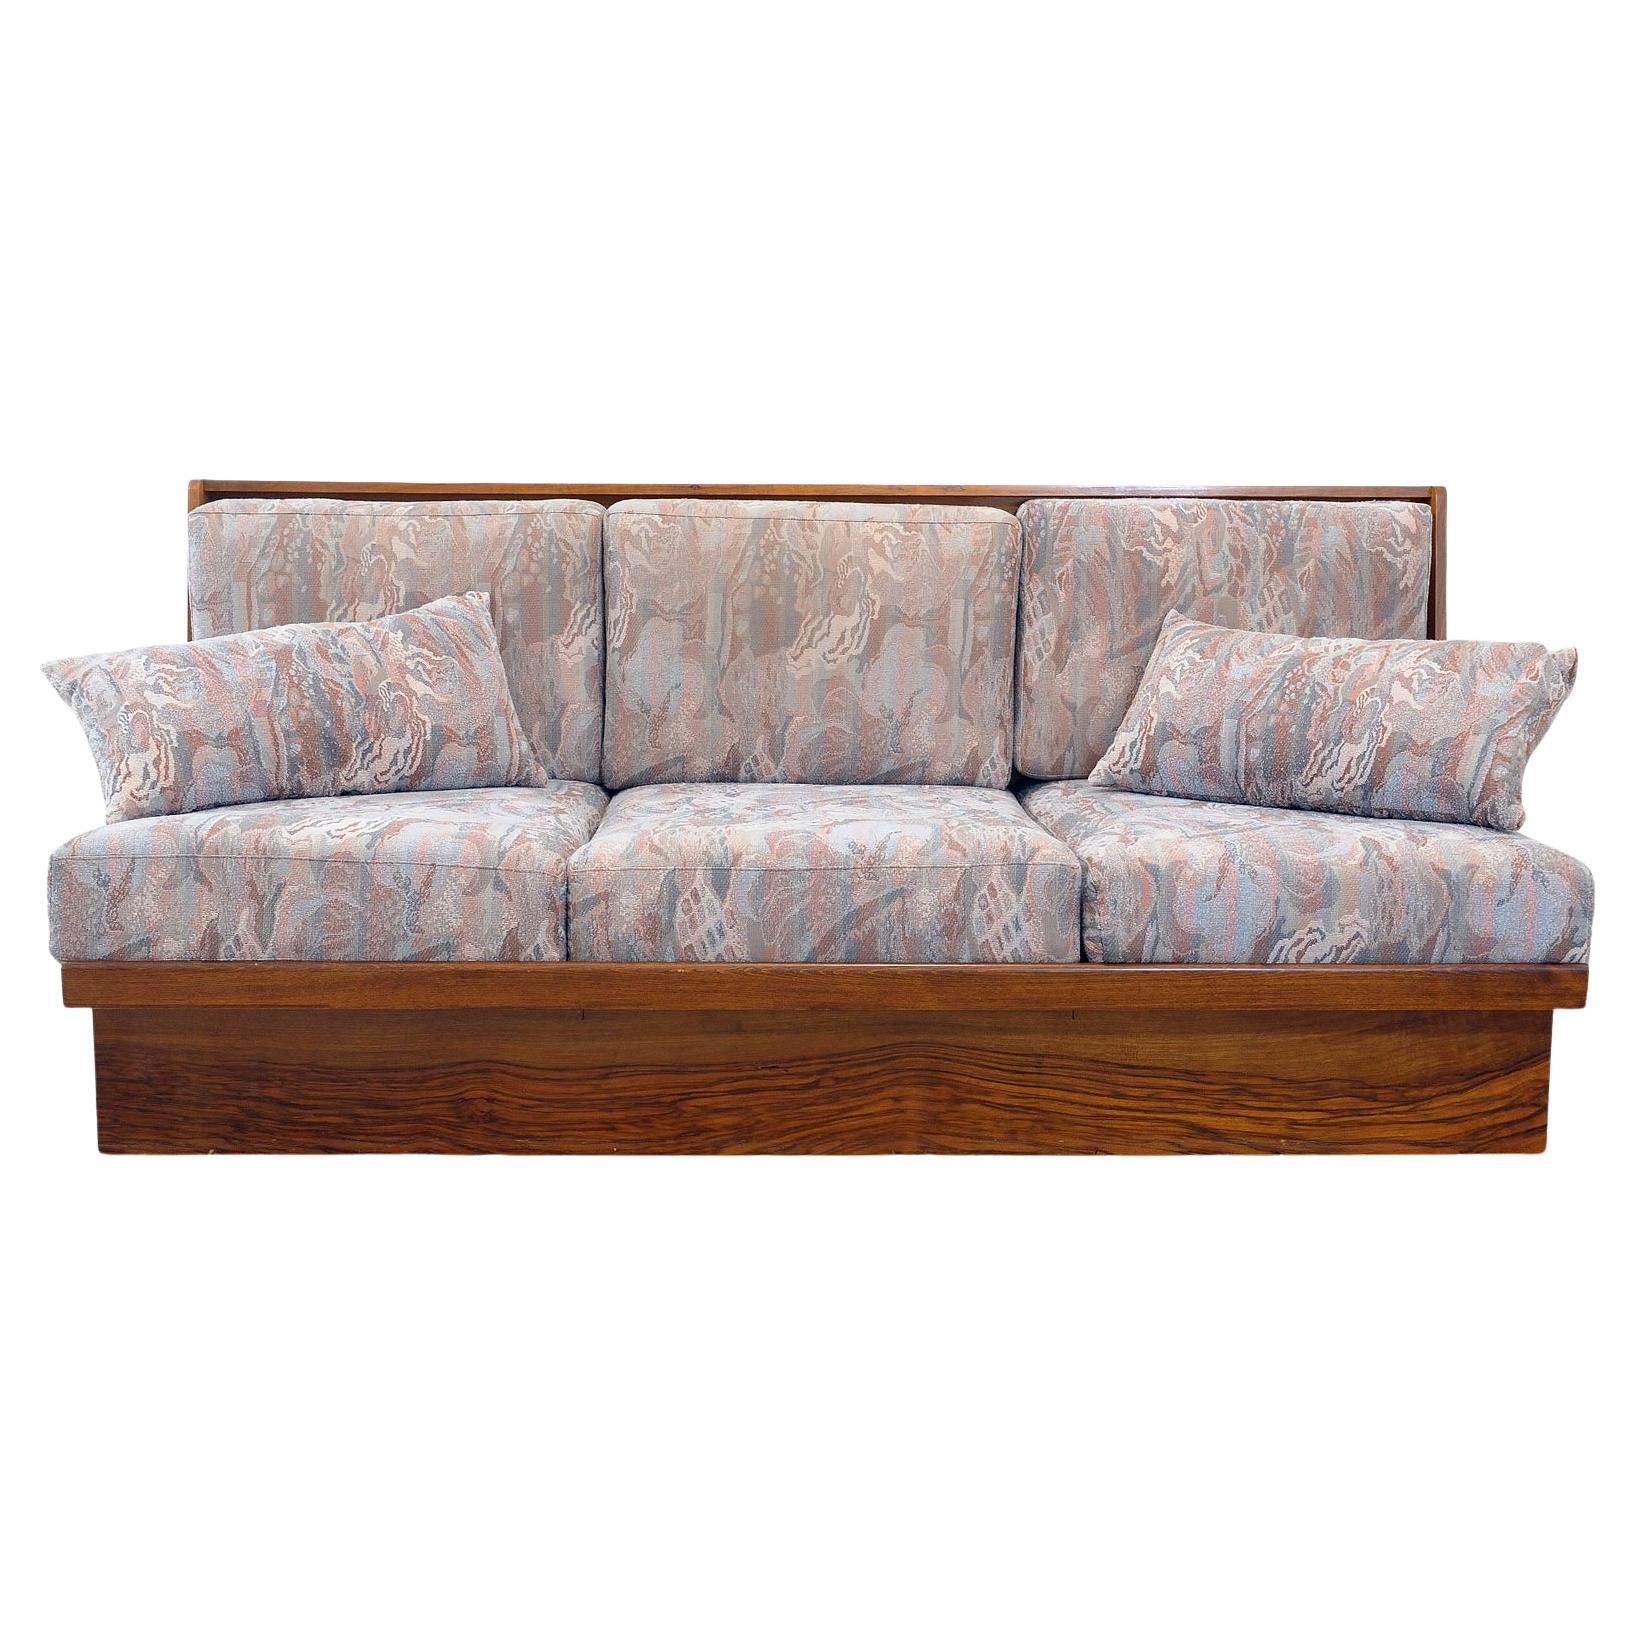 Klappbares Schlafsofa aus der Mitte des Jahrhunderts, 1958 in der ehemaligen Tschechoslowakei hergestellt.

Dieses Sofa hat eine Holzstruktur, die mit Nussbaum furniert ist. Das Sofa befindet sich in einem sehr guten Vintage-Zustand, der leichte